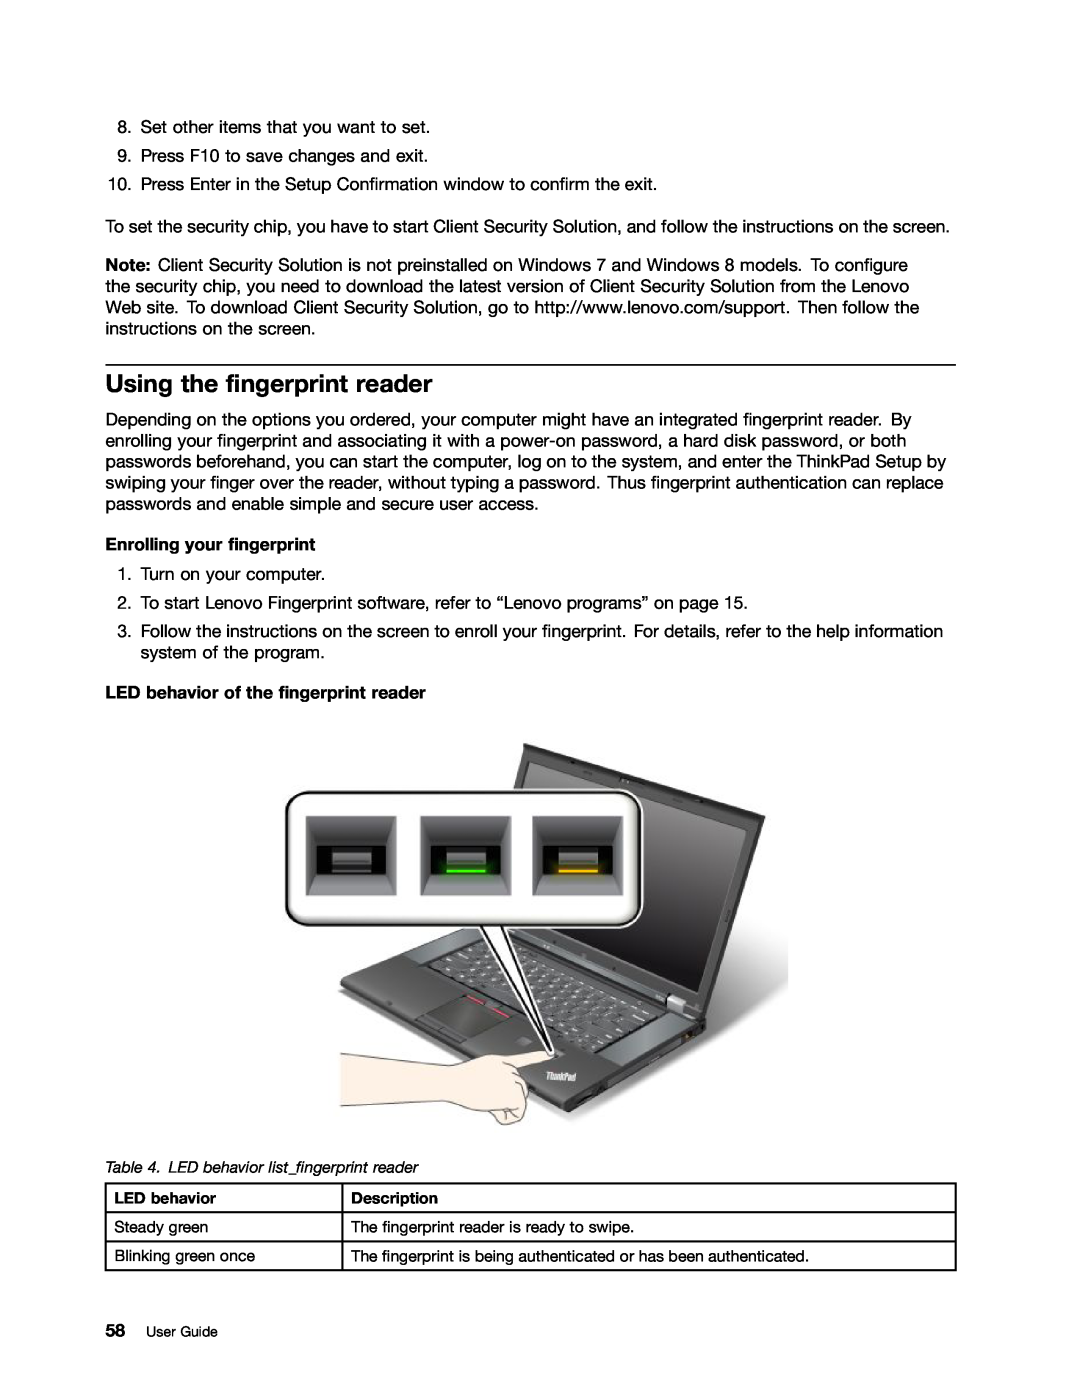 Lenovo 243858U, W530, T530 Using the fingerprint reader, Enrolling your fingerprint, LED behavior of the fingerprint reader 